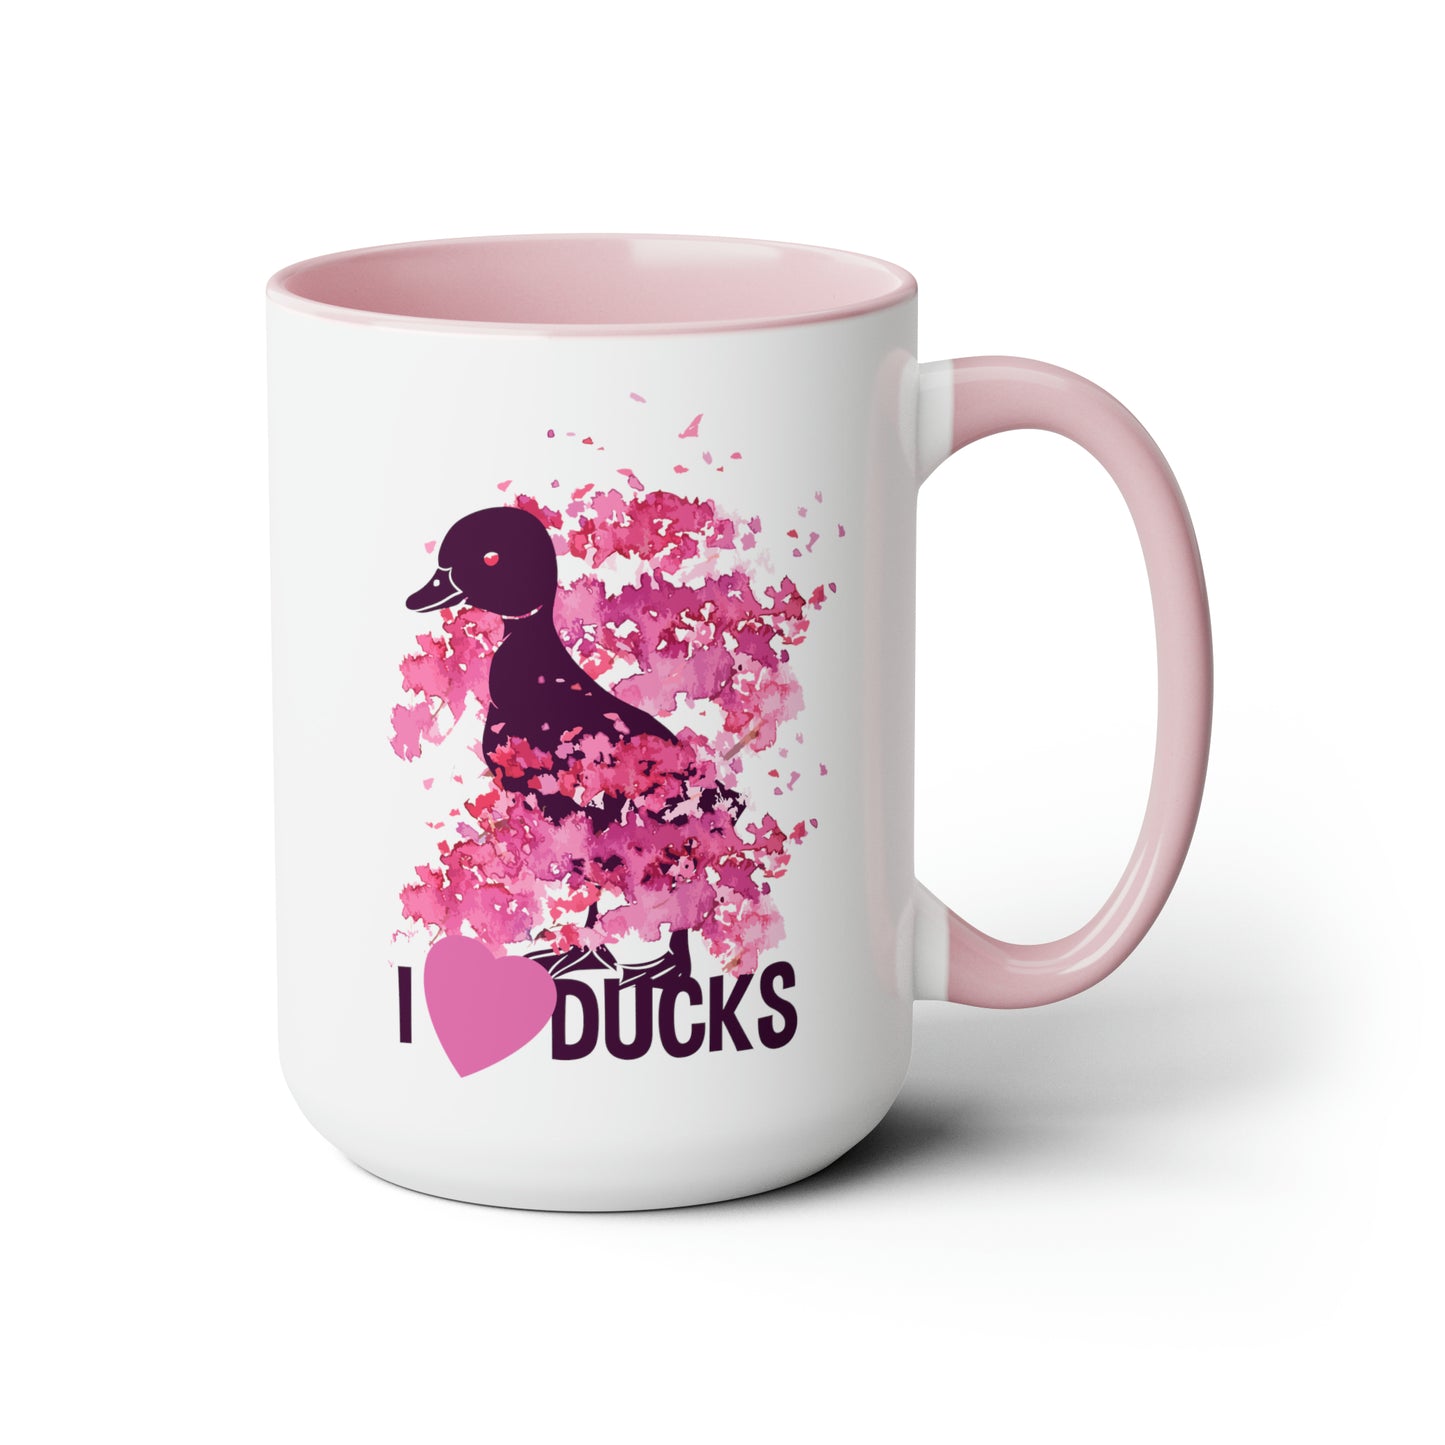 I Love Ducks Two-Tone Coffee Mugs, 15oz